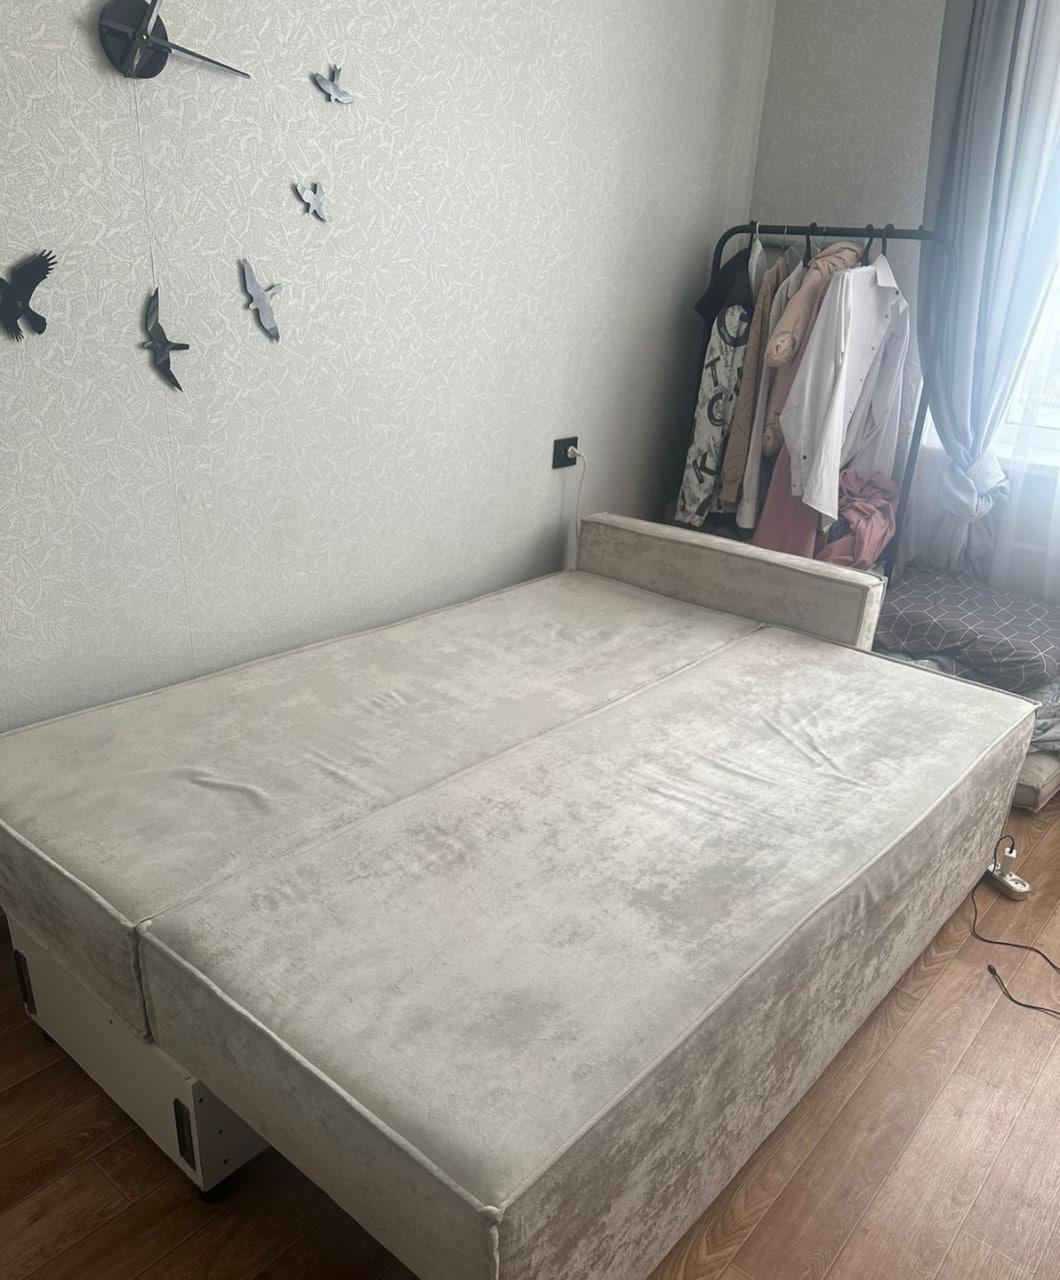 Фото Следком опубликовал фото из квартиры в Новосибирске, где забили новорожденную девочку до смерти 2